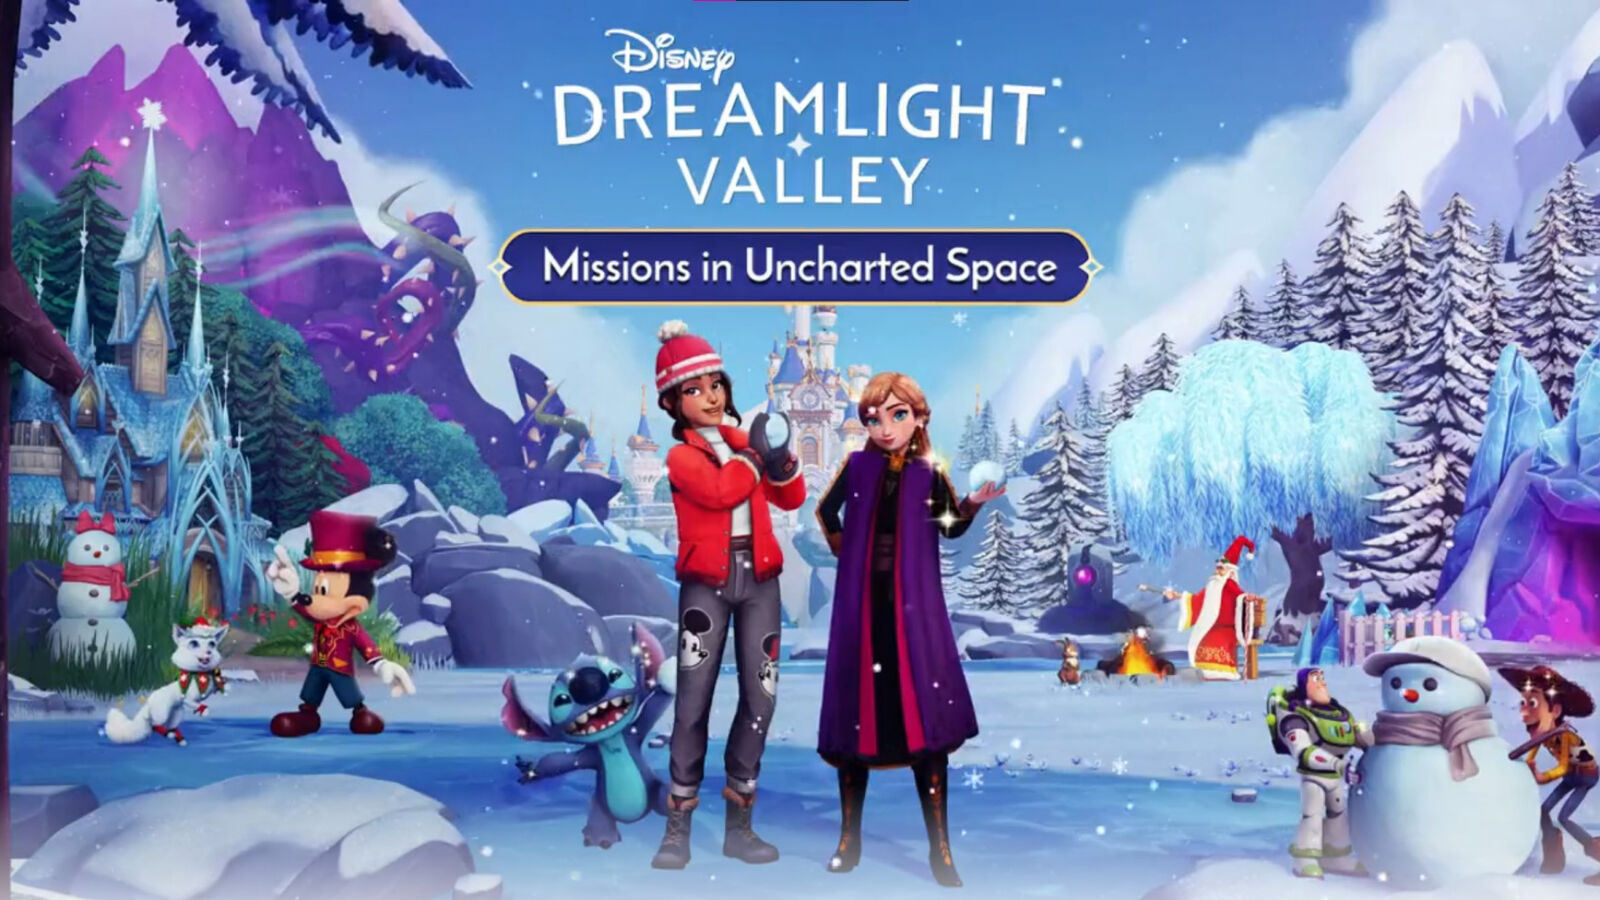 Stitch bromeó en la última promoción de Disney Dreamlight Valley